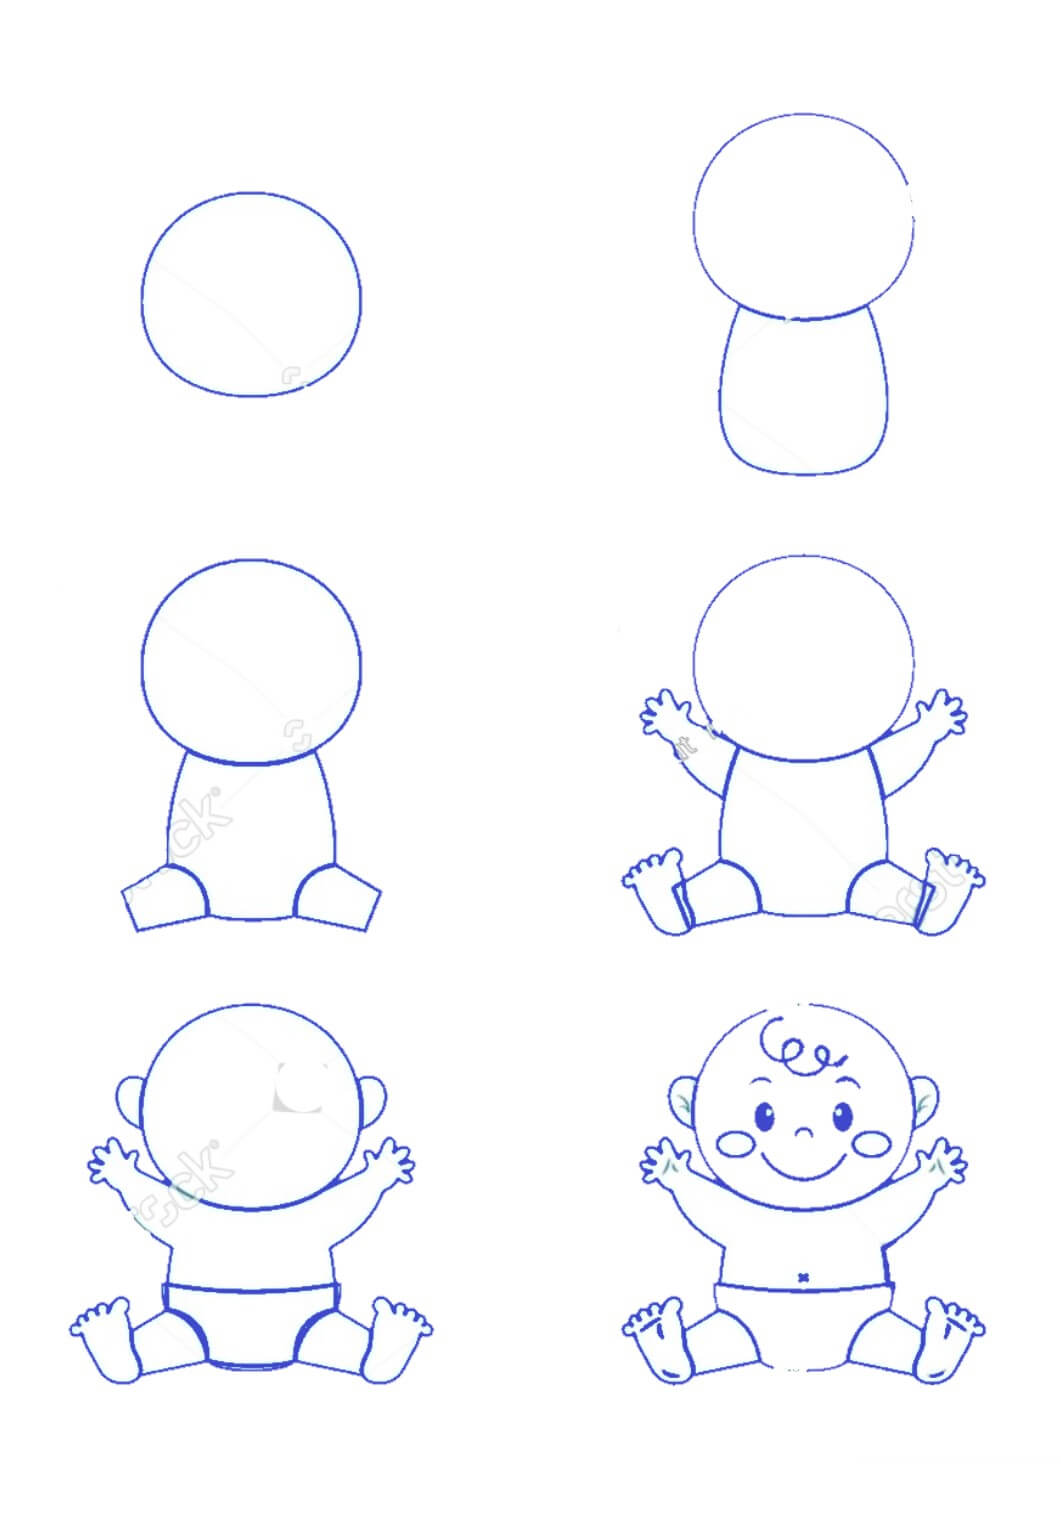 Vauvan idea (2) piirustus